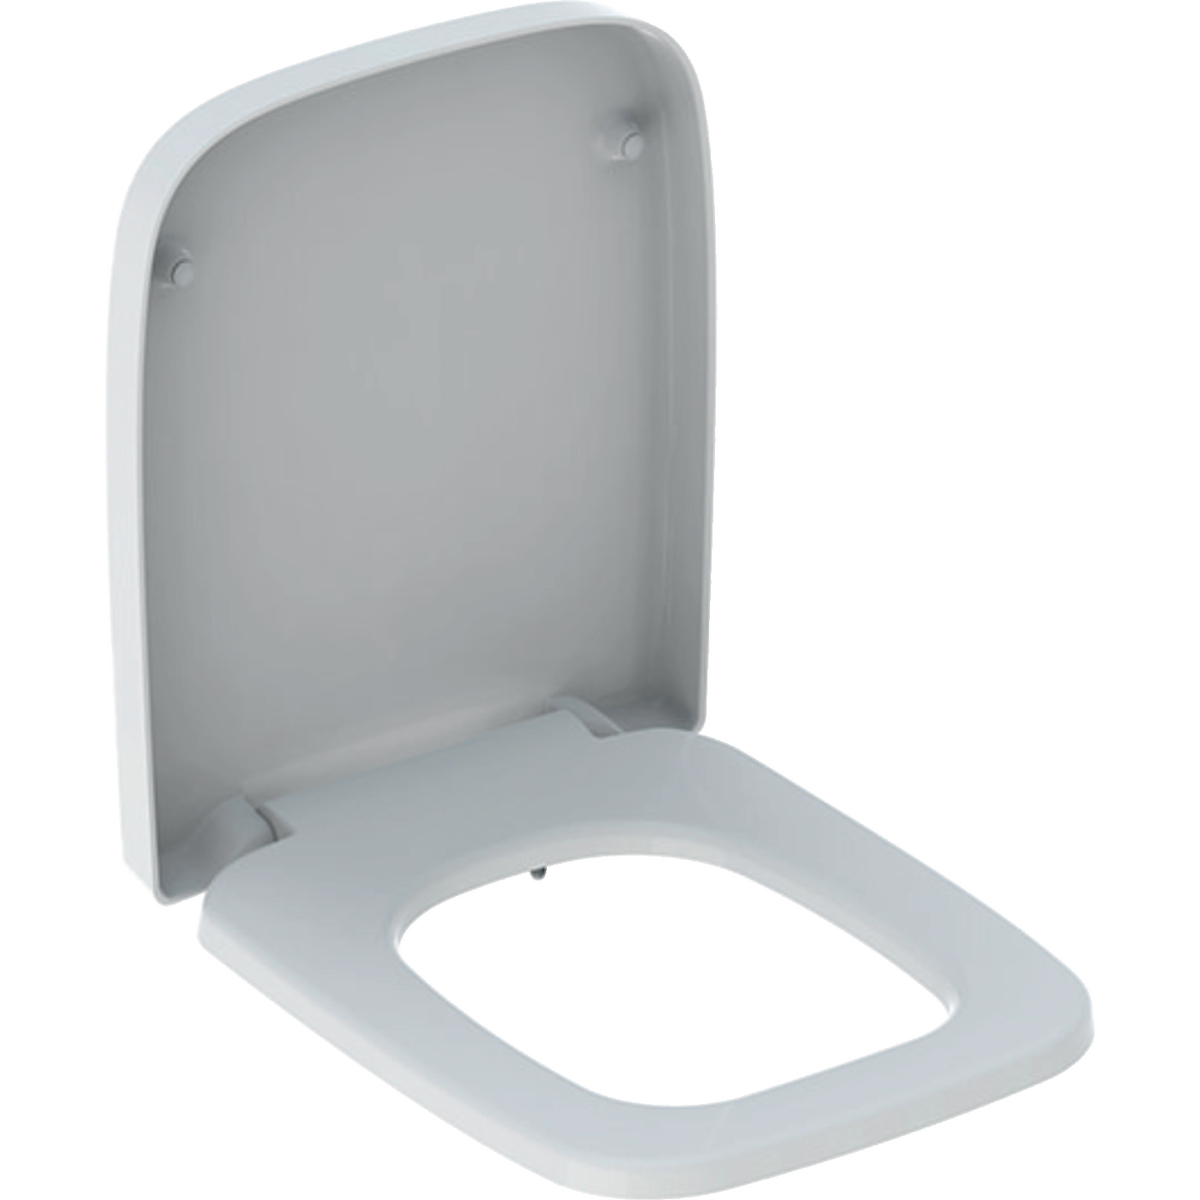 Abattant WC Geberit RENOVA PLAN forme rectangulaire, fixation par le dessus, blanc brillant